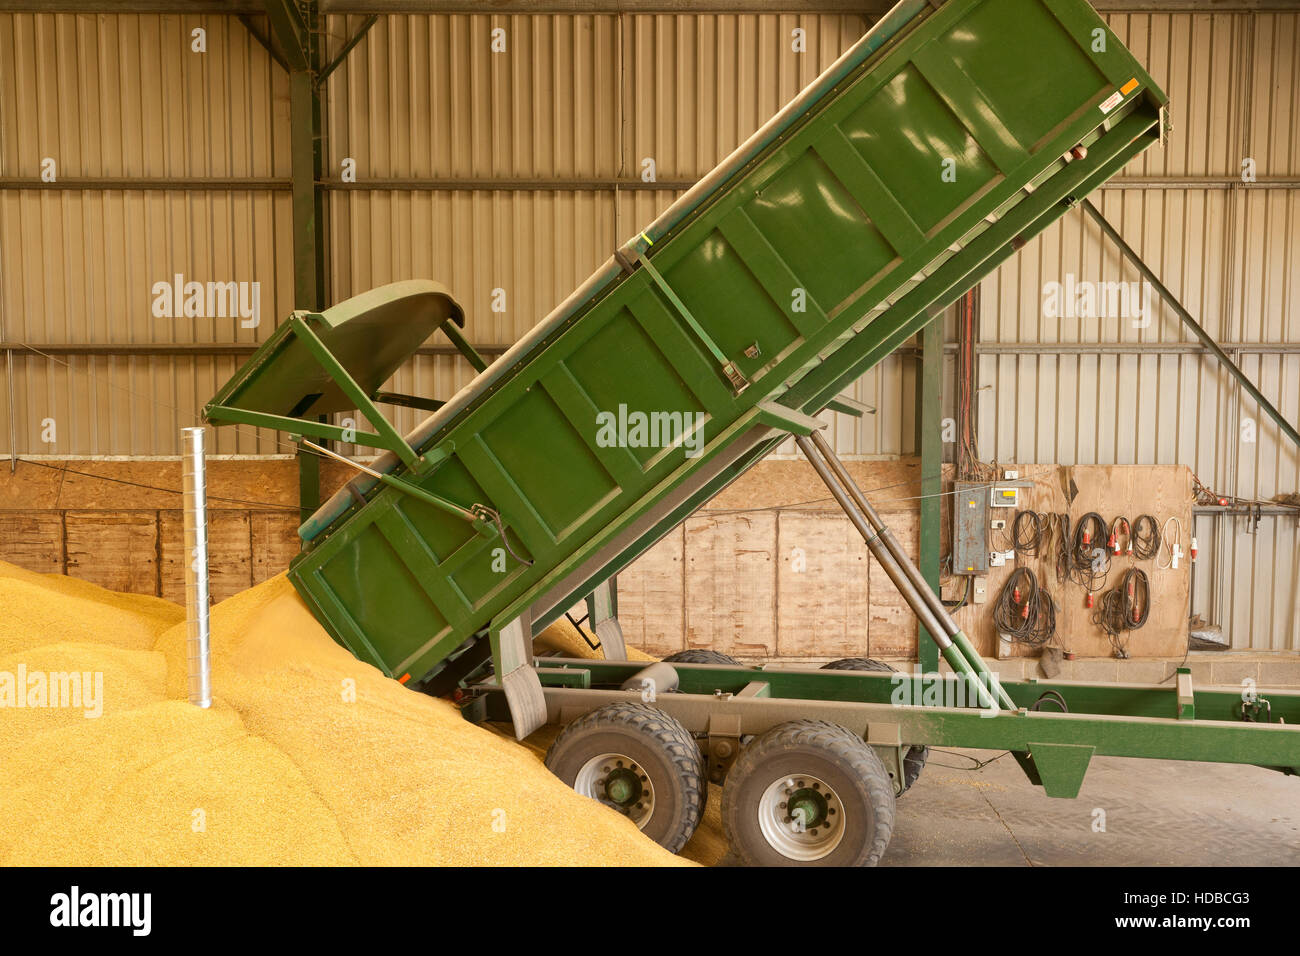 Un basculement de remorque agricole de maïs dans une grange de stockage Banque D'Images